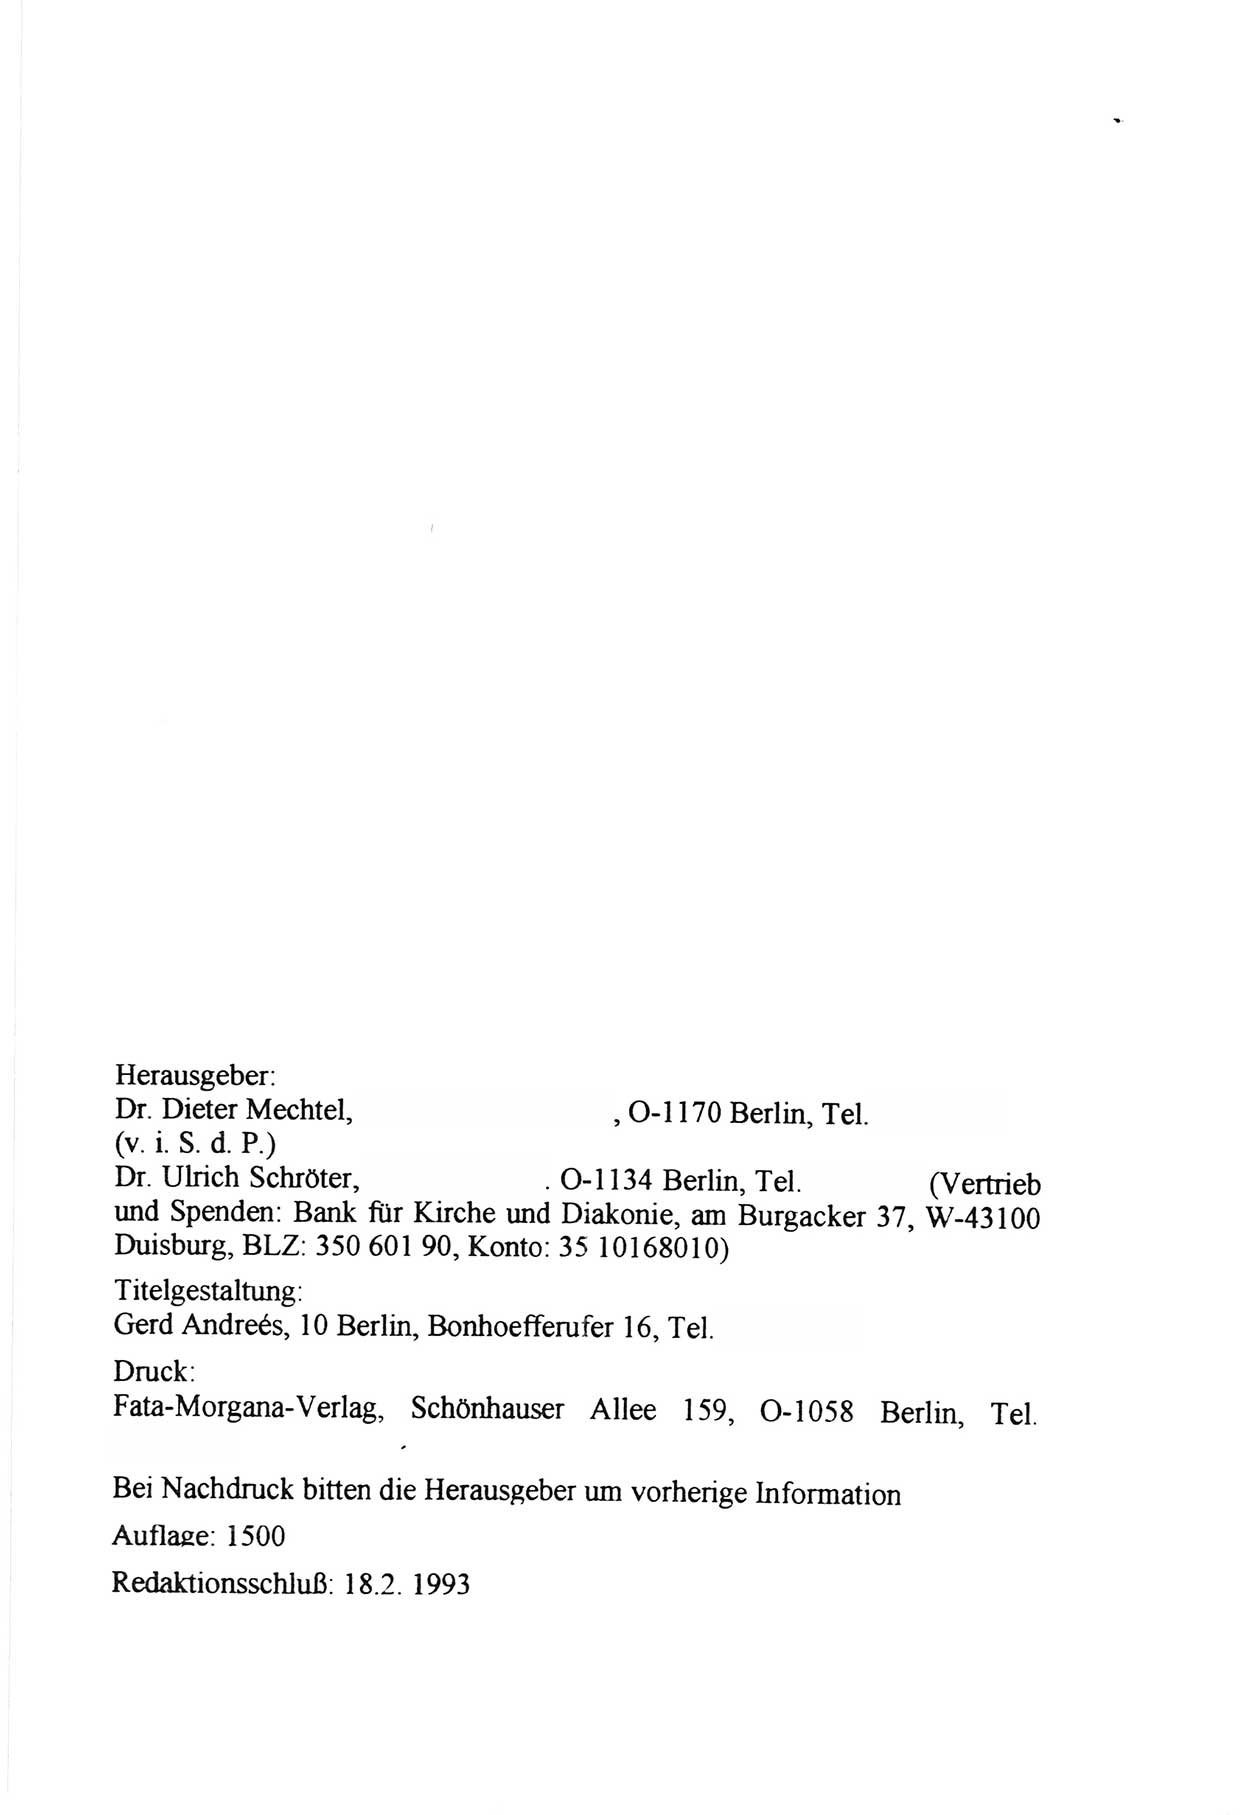 Zwie-Gespräch, Beiträge zur Aufarbeitung der Staatssicherheits-Vergangenheit [Deutsche Demokratische Republik (DDR)], Ausgabe Nr. 12, Berlin 1993, Seite 34 (Zwie-Gespr. Ausg. 12 1993, S. 34)